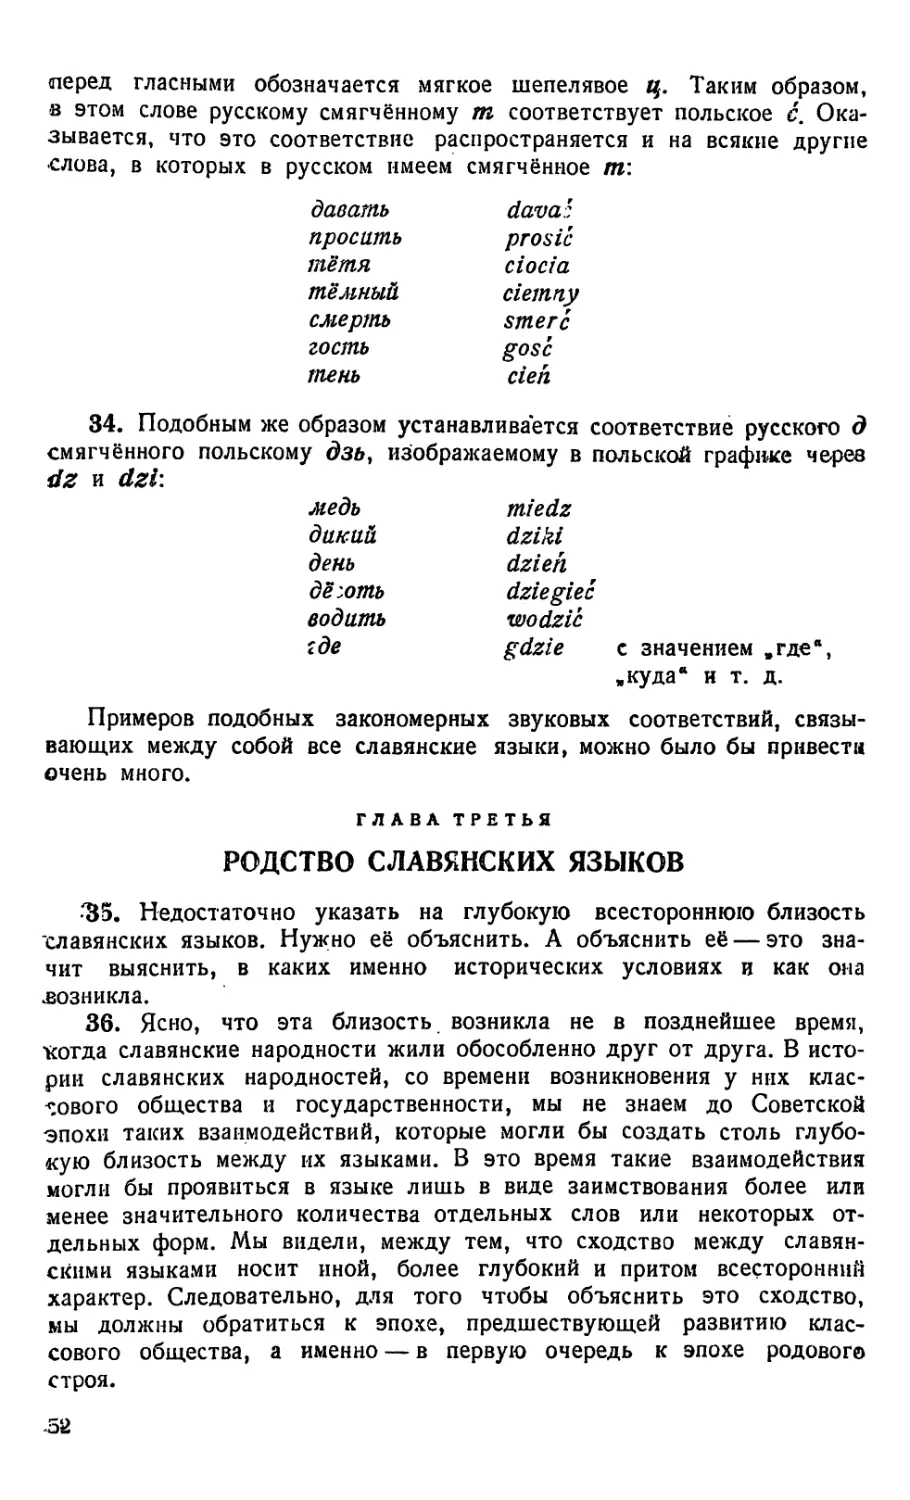 Глава третья. Родство славянских языков